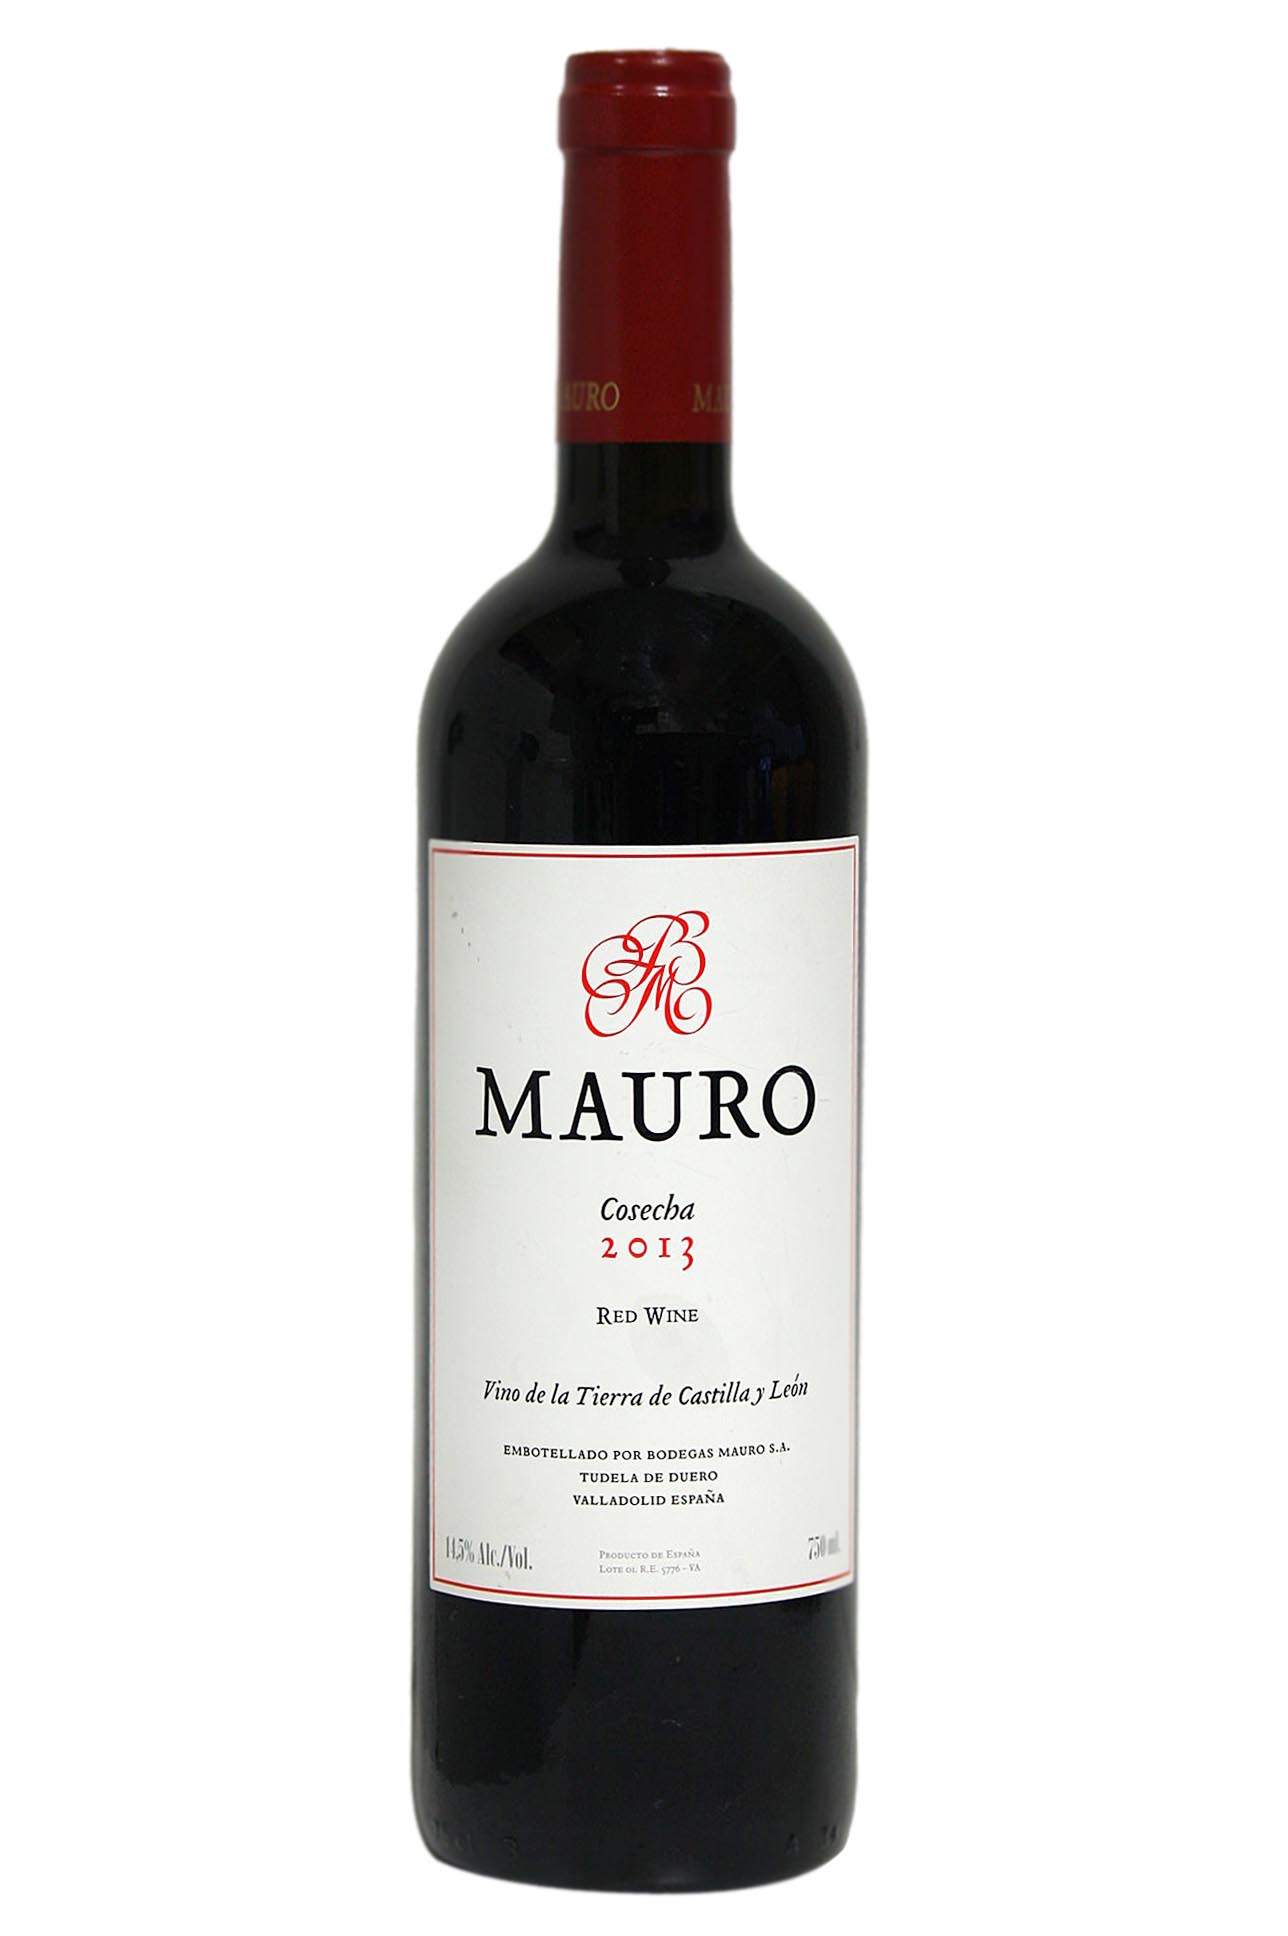 Mauro red wine